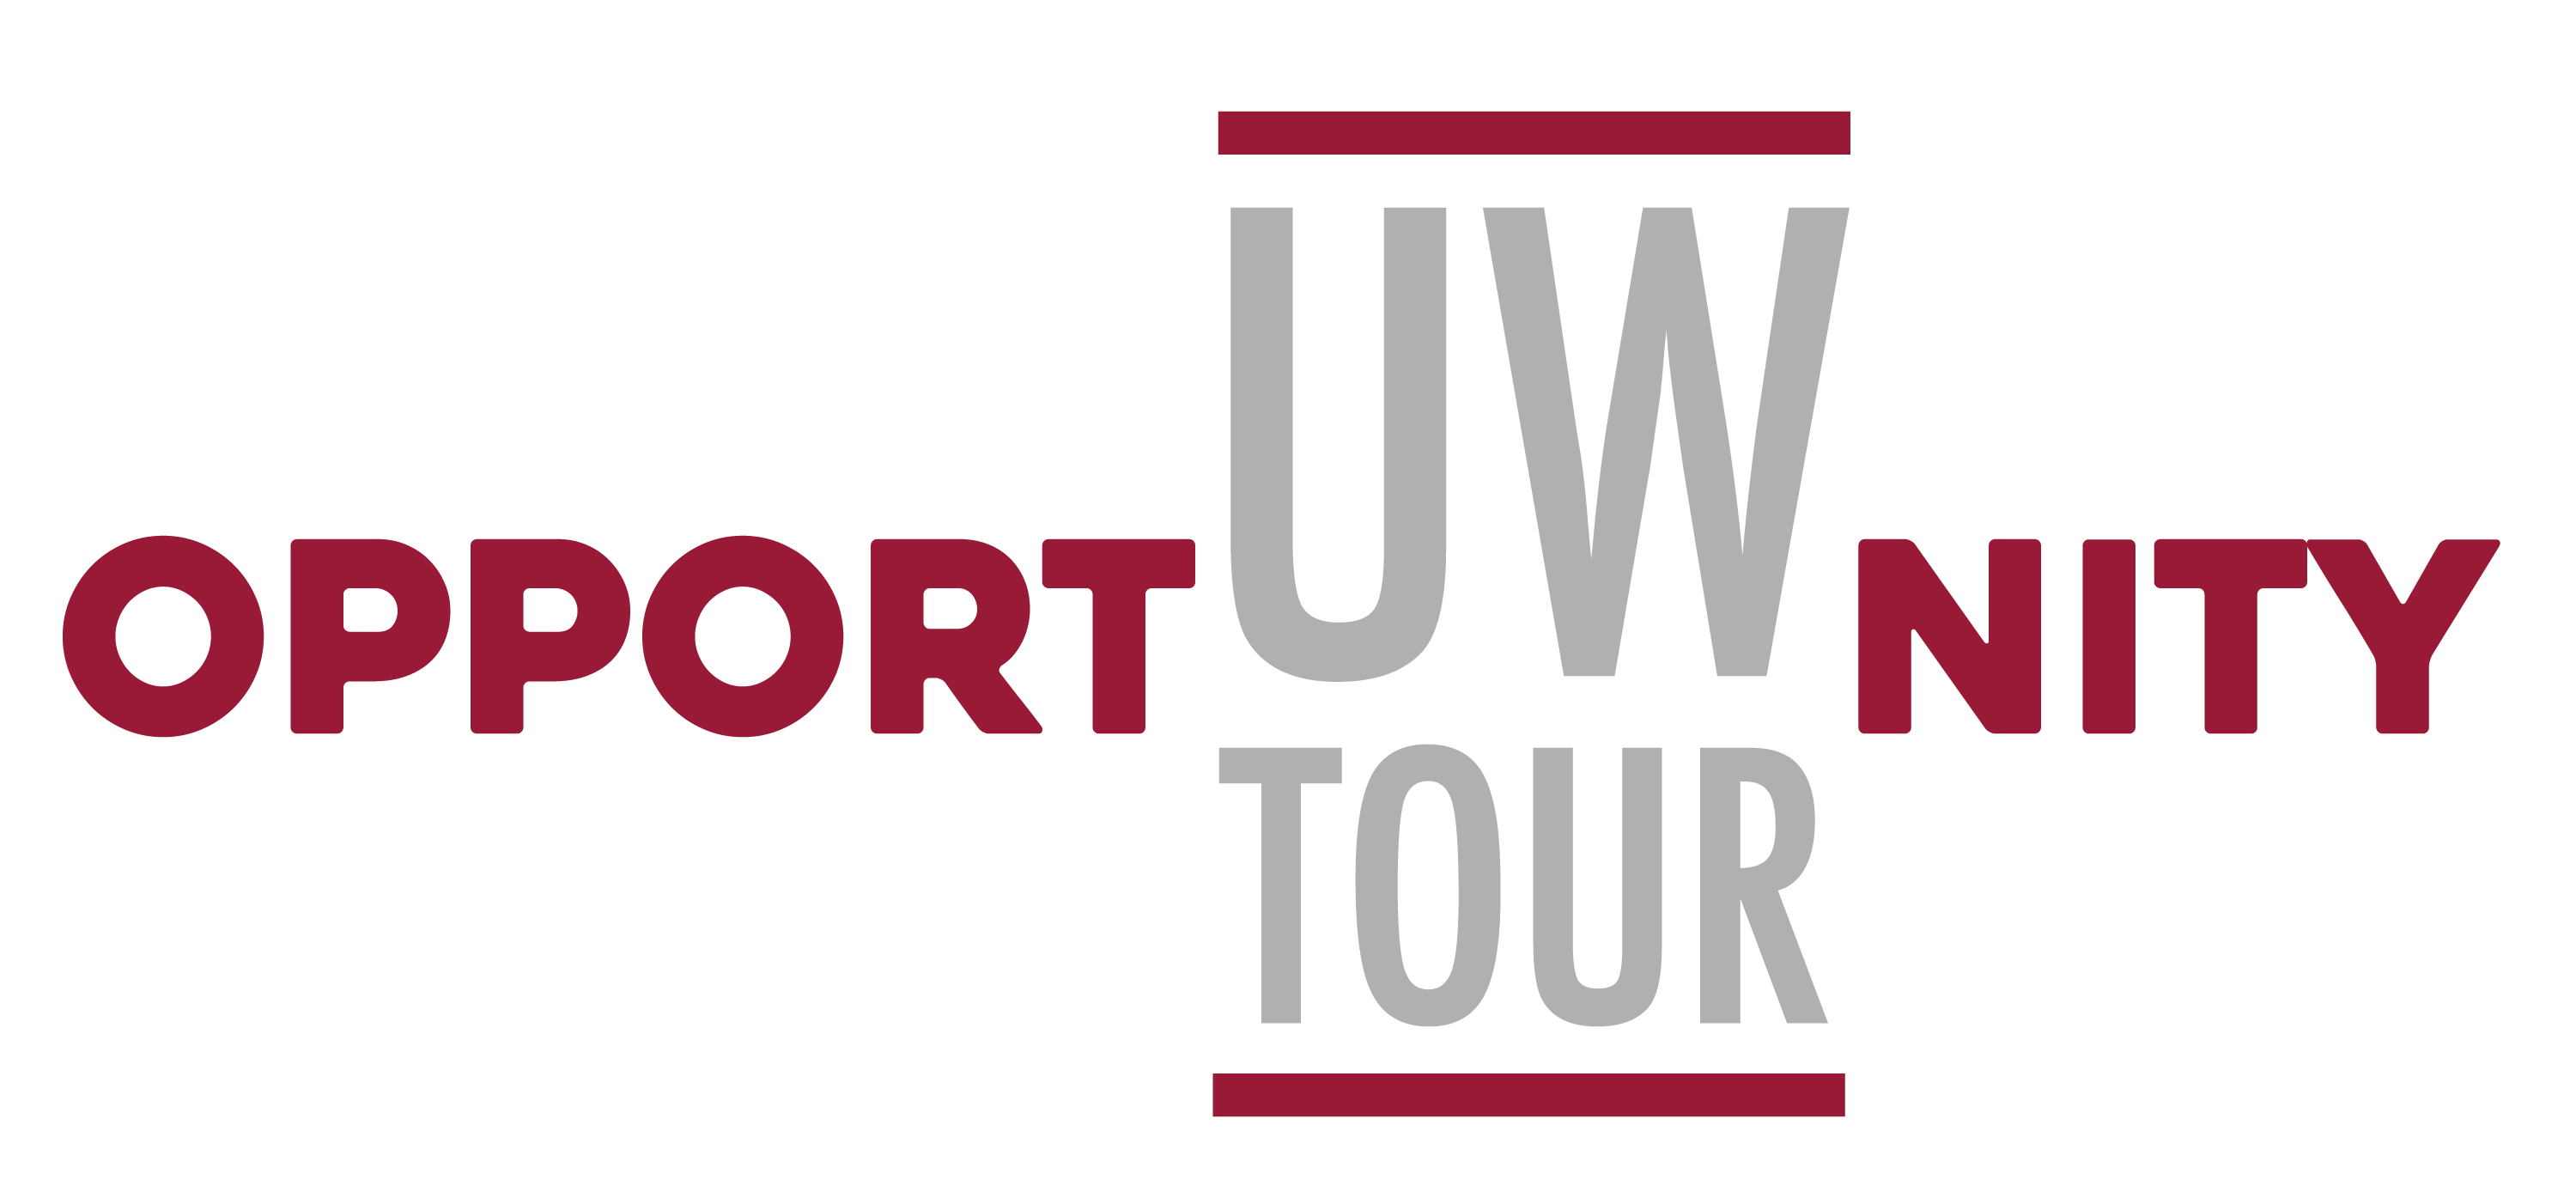 OpportUWnity Tour Logo